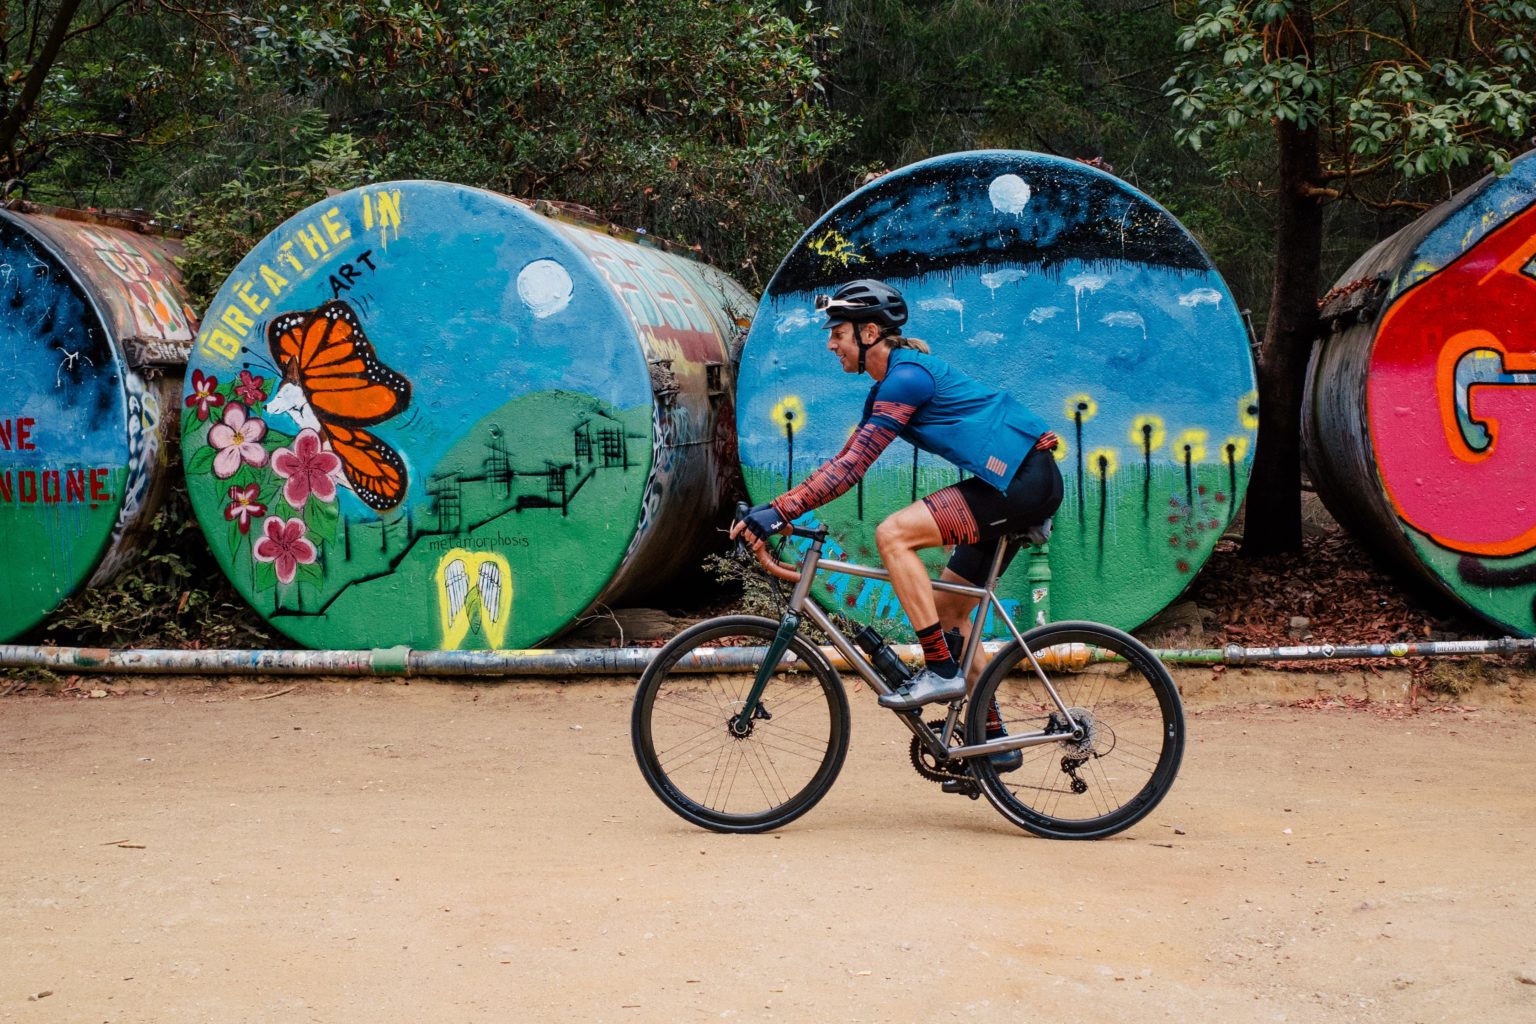 A titanium gravel bike riding past the 'barrels' at UCSC